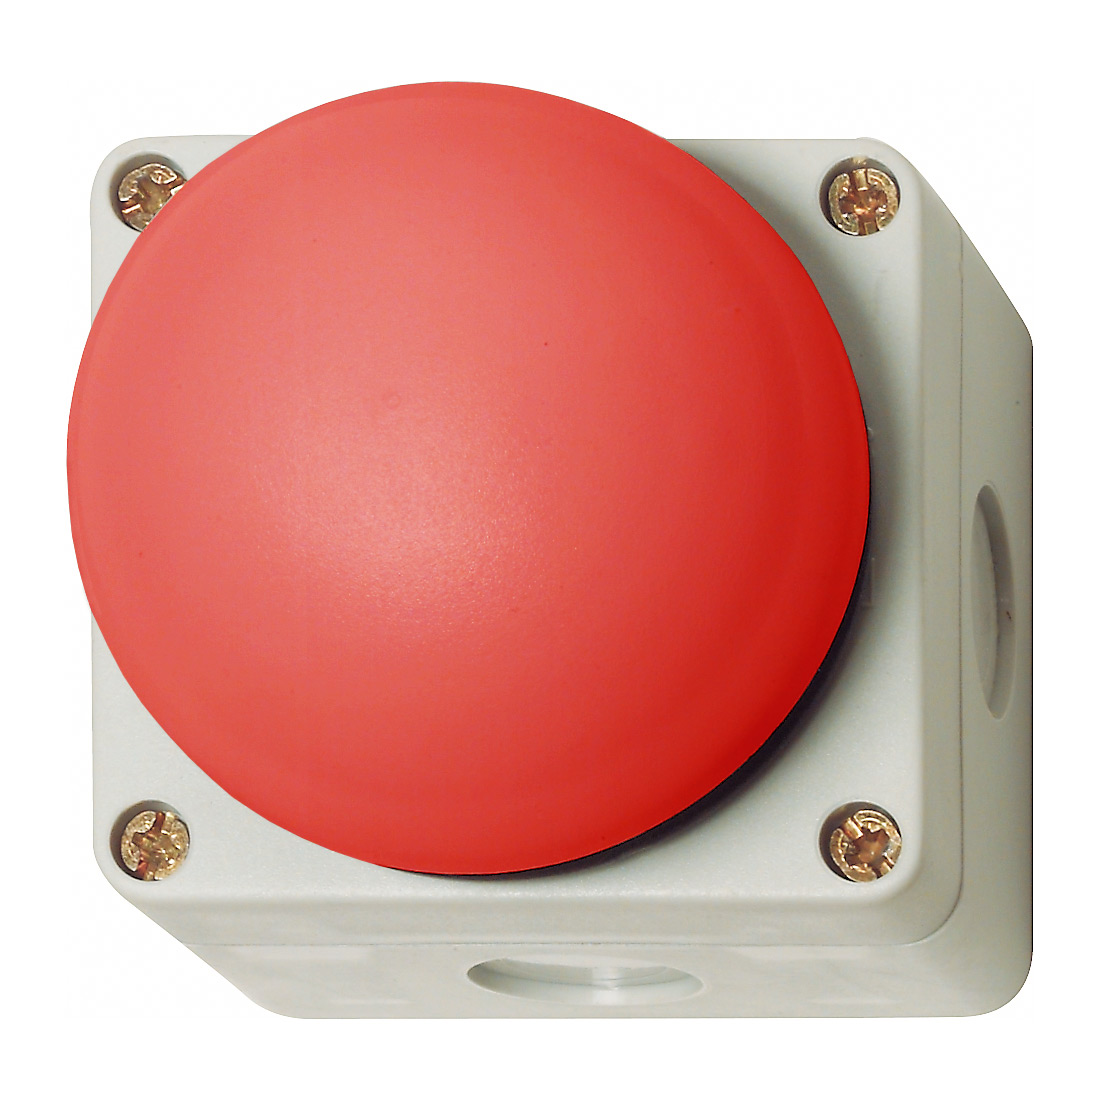 Кнопка-педаль (управление ладонью или ногой) в корпусе BG, IP67, ∅70мм, 1NO + 1NC, красная BG10P14P RT-11 Benedict